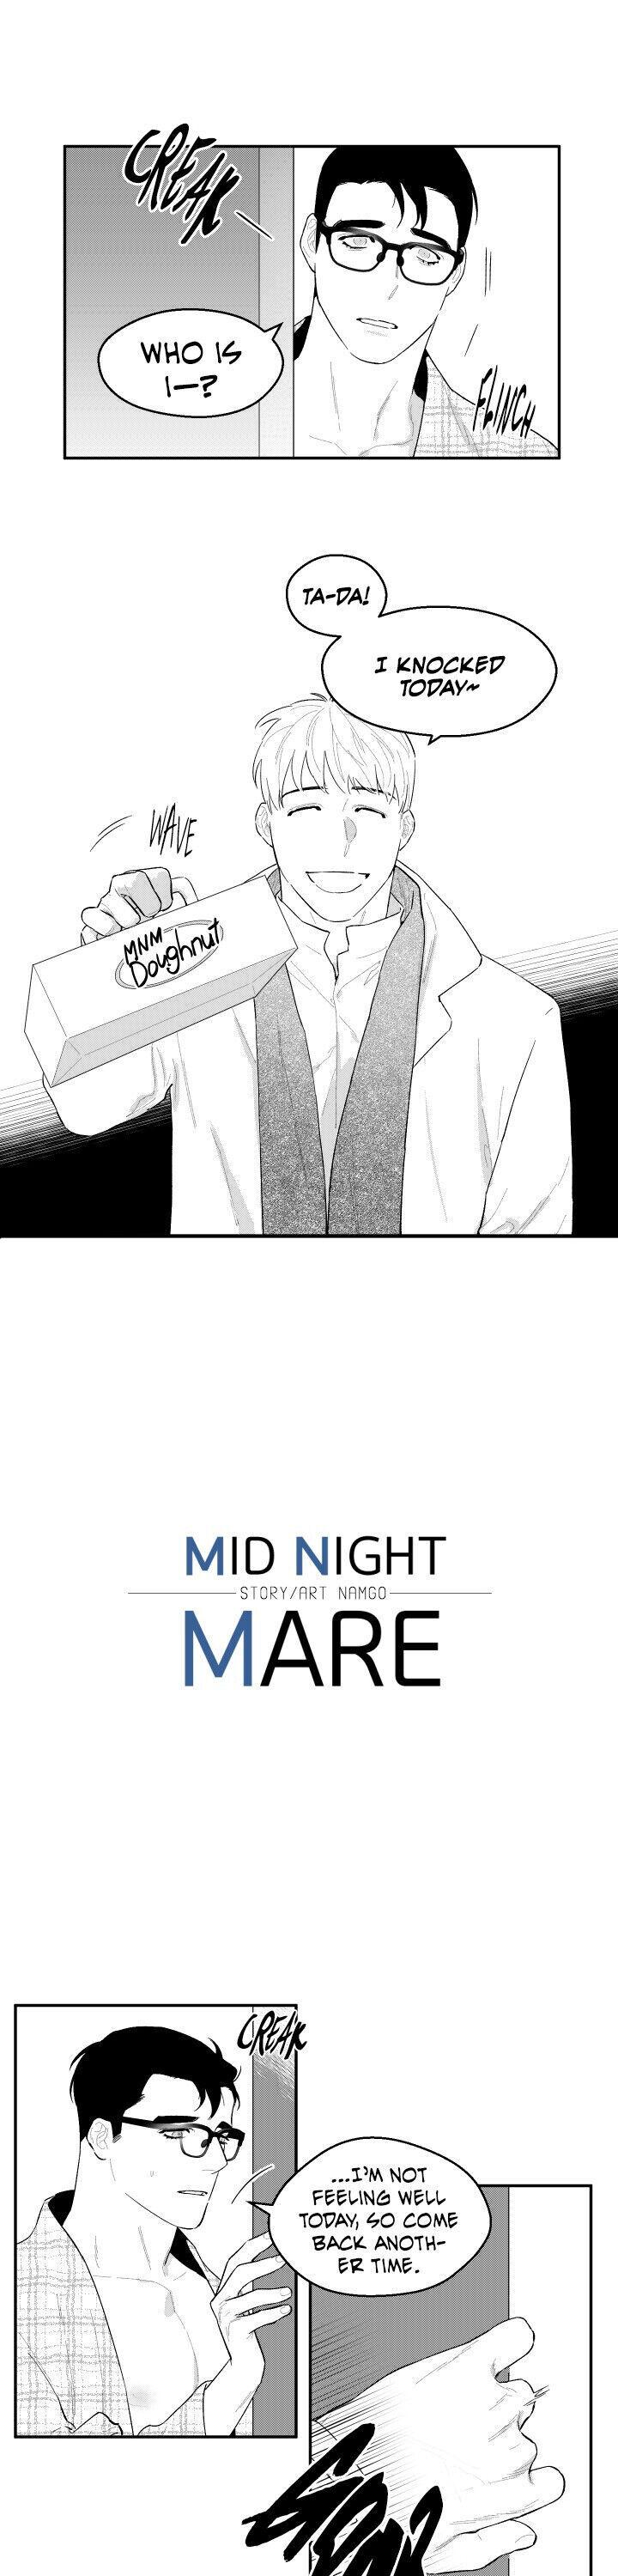 Midnightmare - Page 2